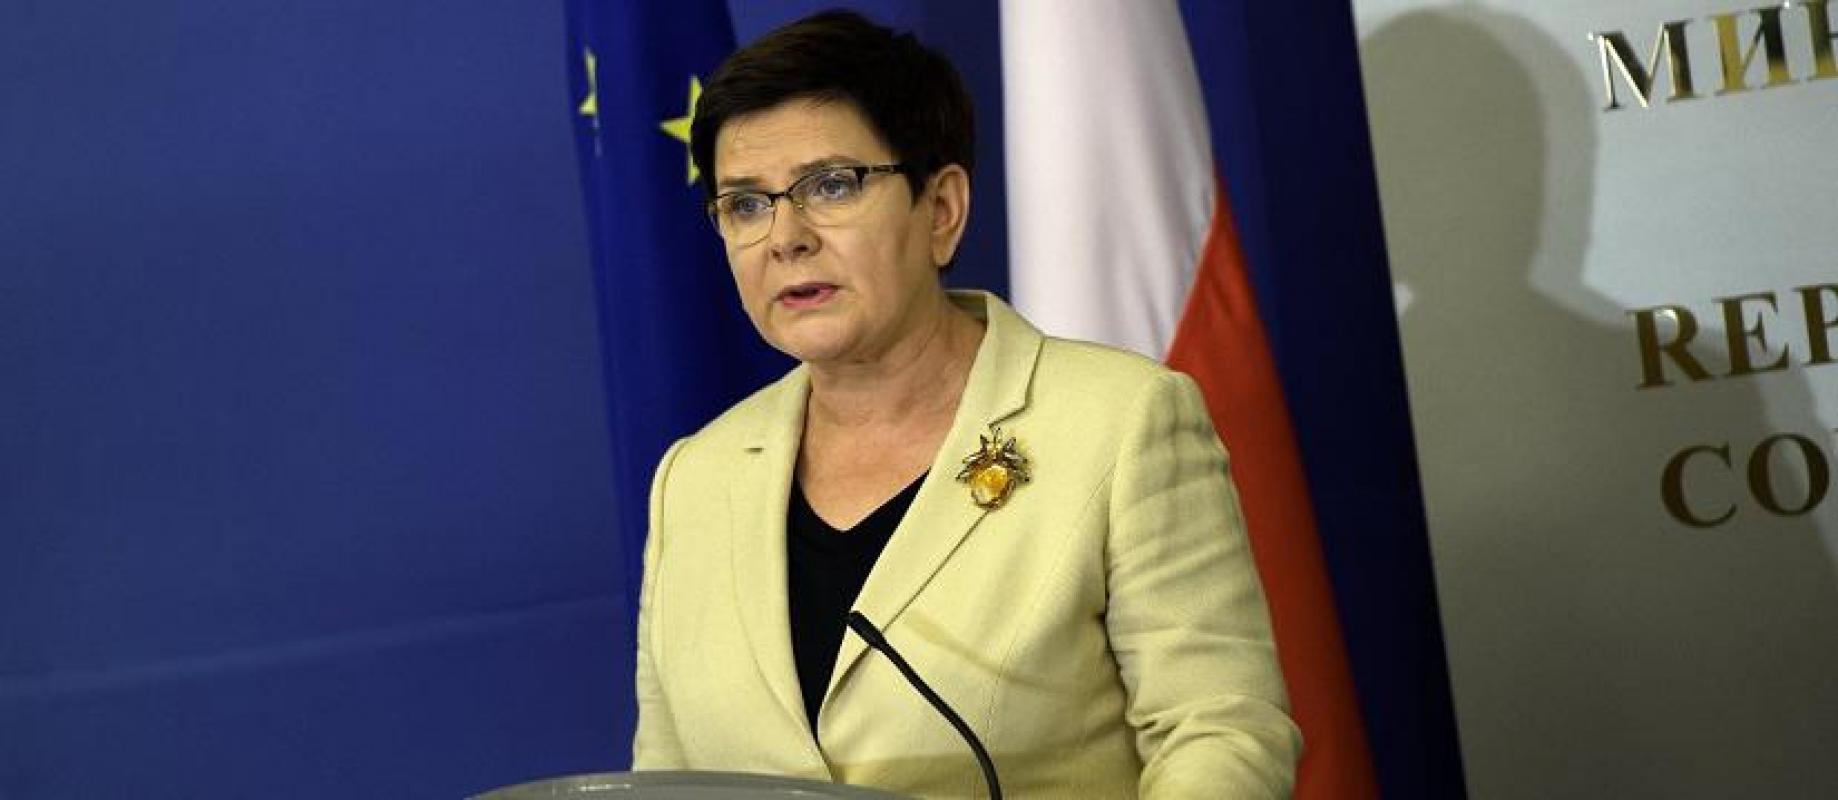 Lenkijos premjerė Beata Šidlo: Sprendimas dėl pabėgėlių perkėlimo nepasiteisino ir neišsprendė problemos